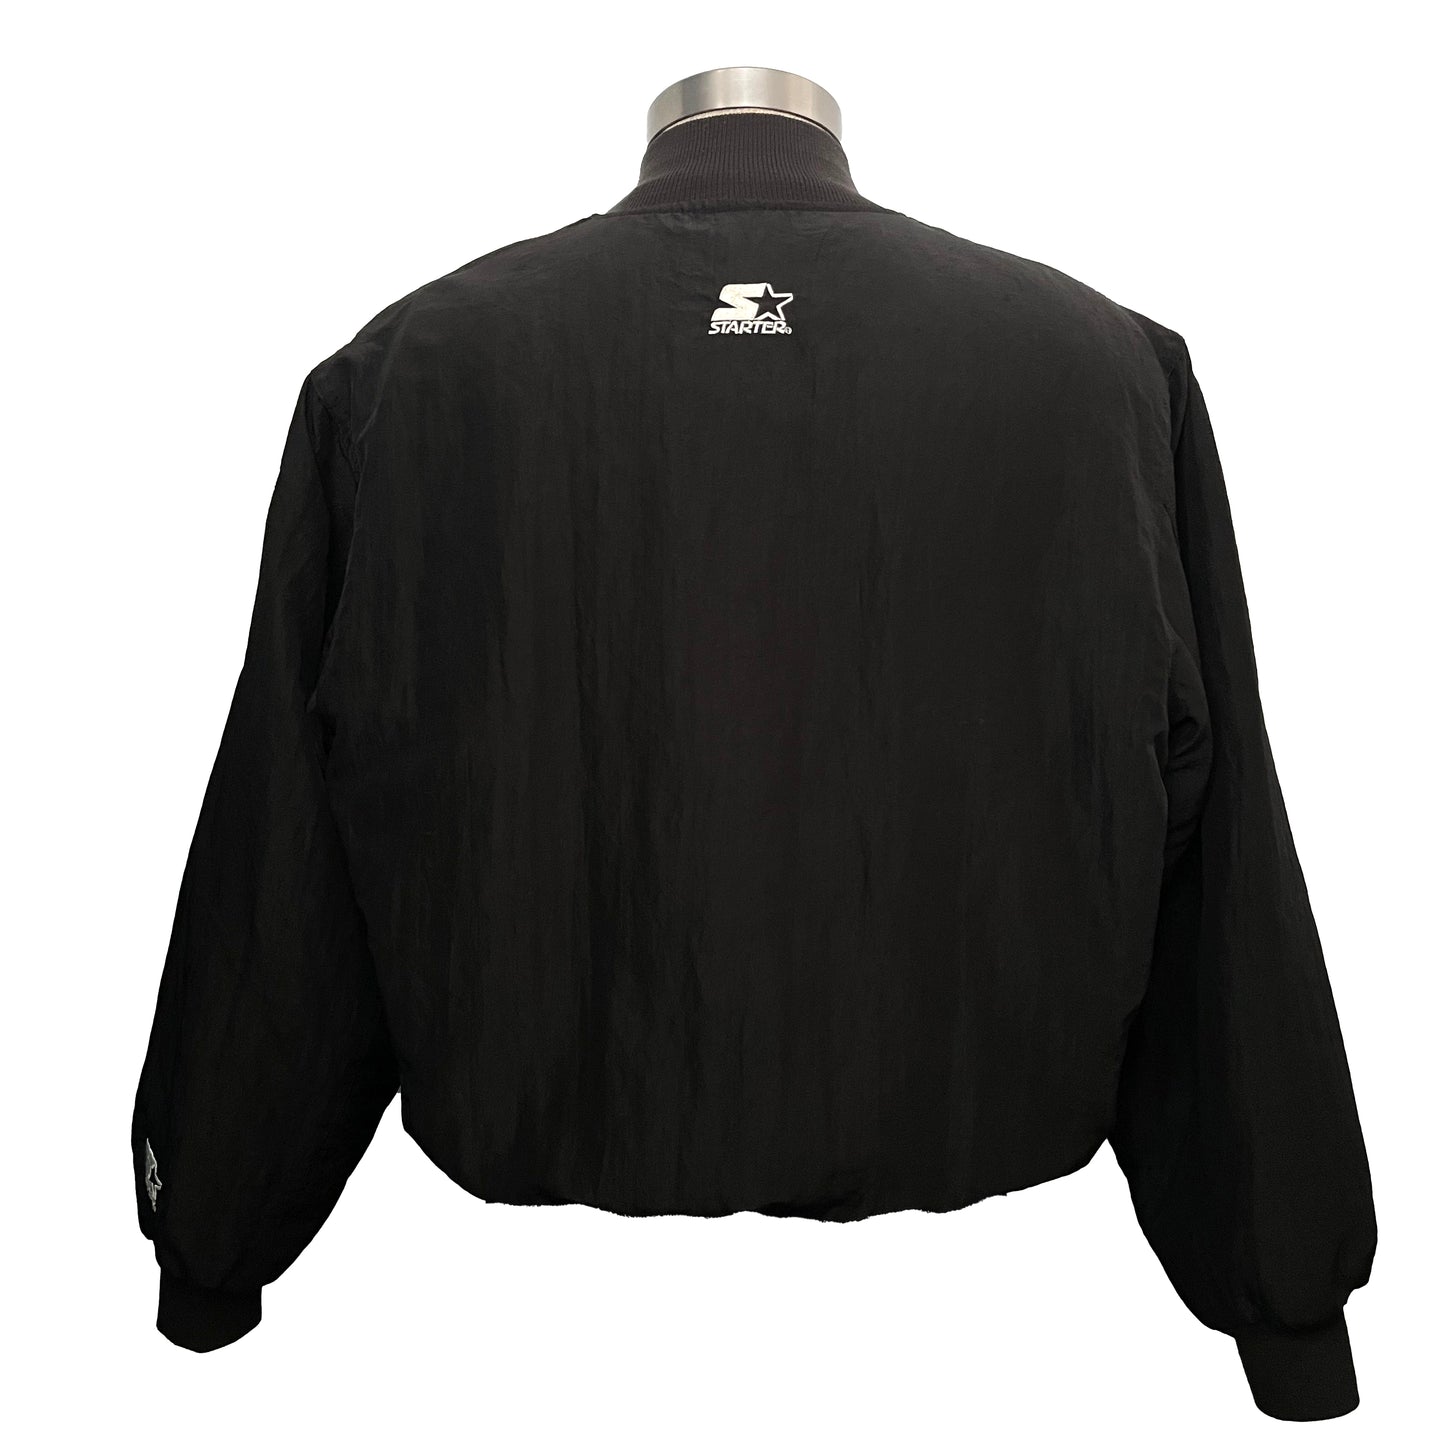 Jacksonville Jaguars STARTER banned logo bomber jacket size LARGE